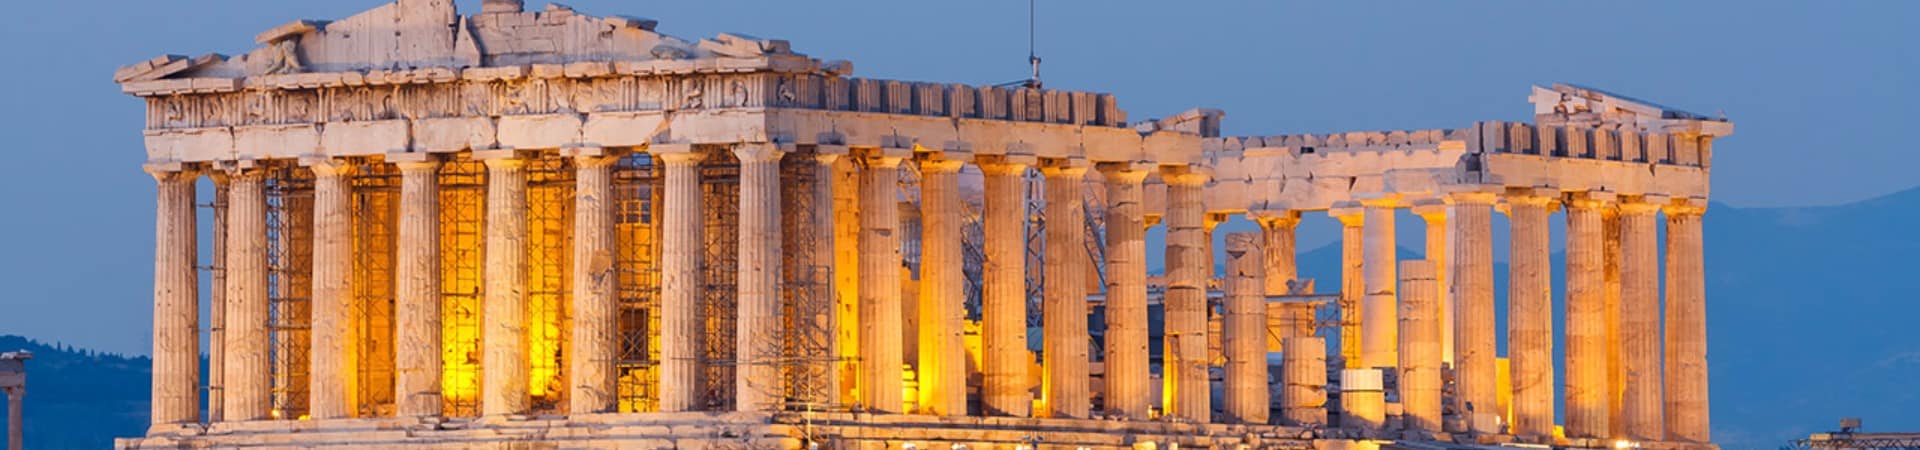 Parthenon ao anoitecer - Atenas, Grécia.